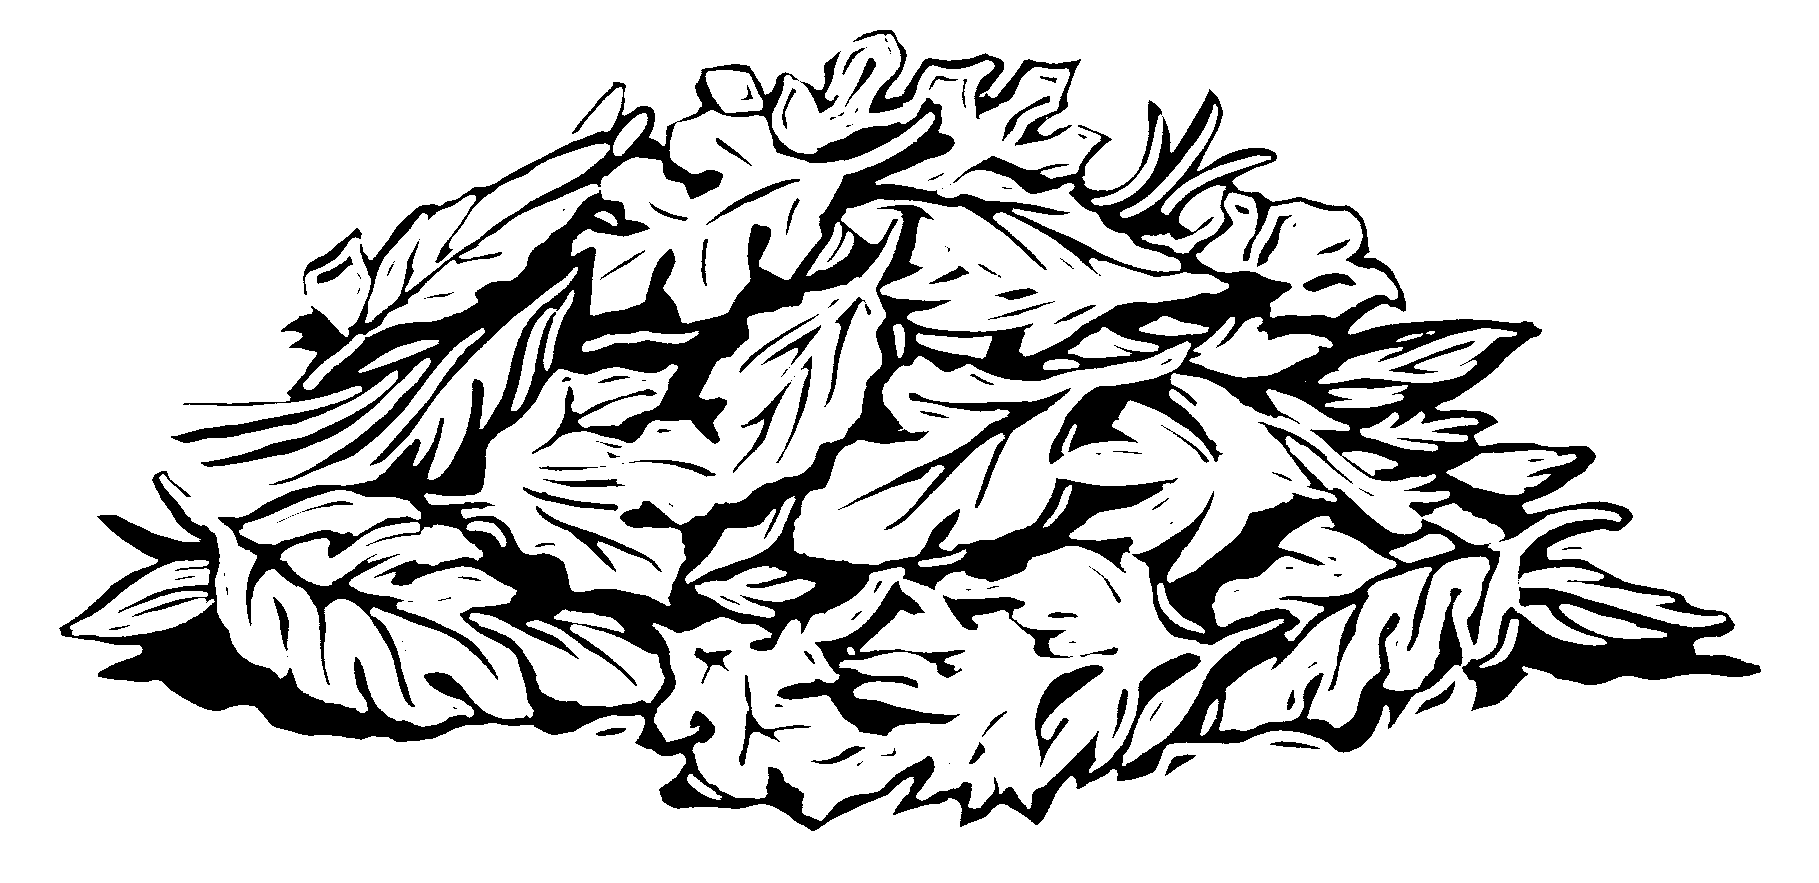 Line drawings of leaves.